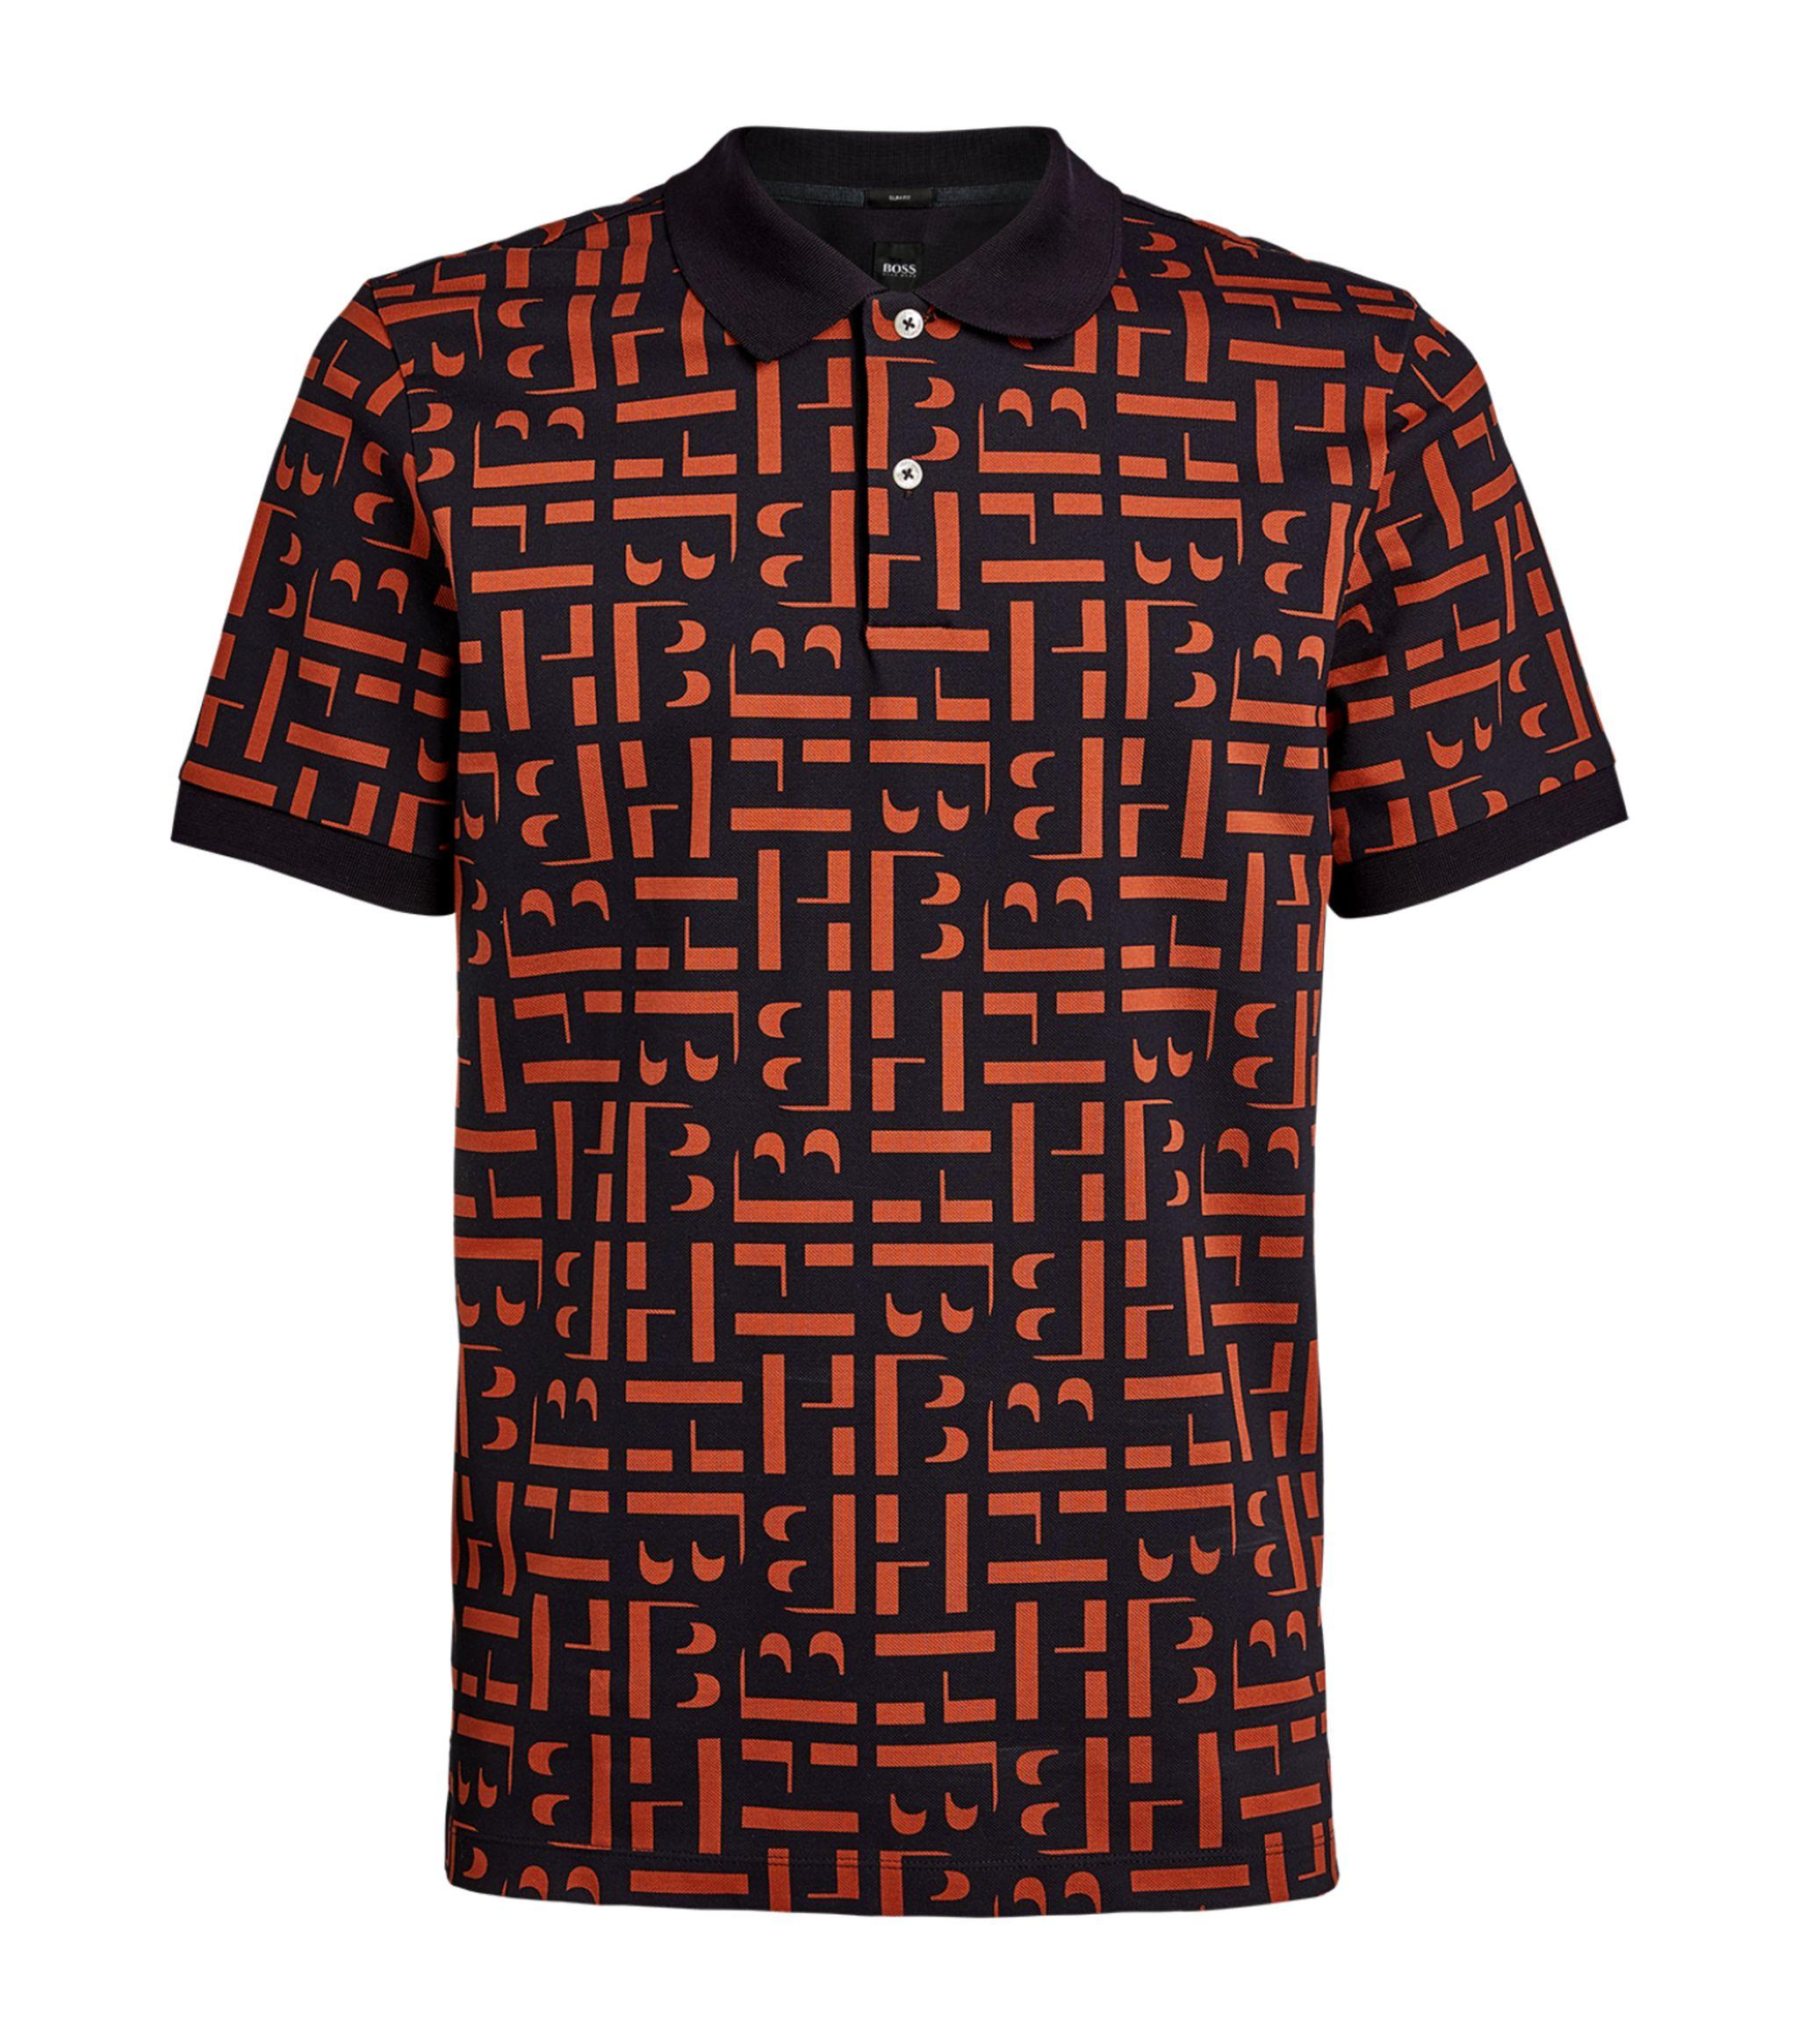 BOSS by HUGO BOSS Cotton Hb Print Shirt in Orange for Men - Lyst